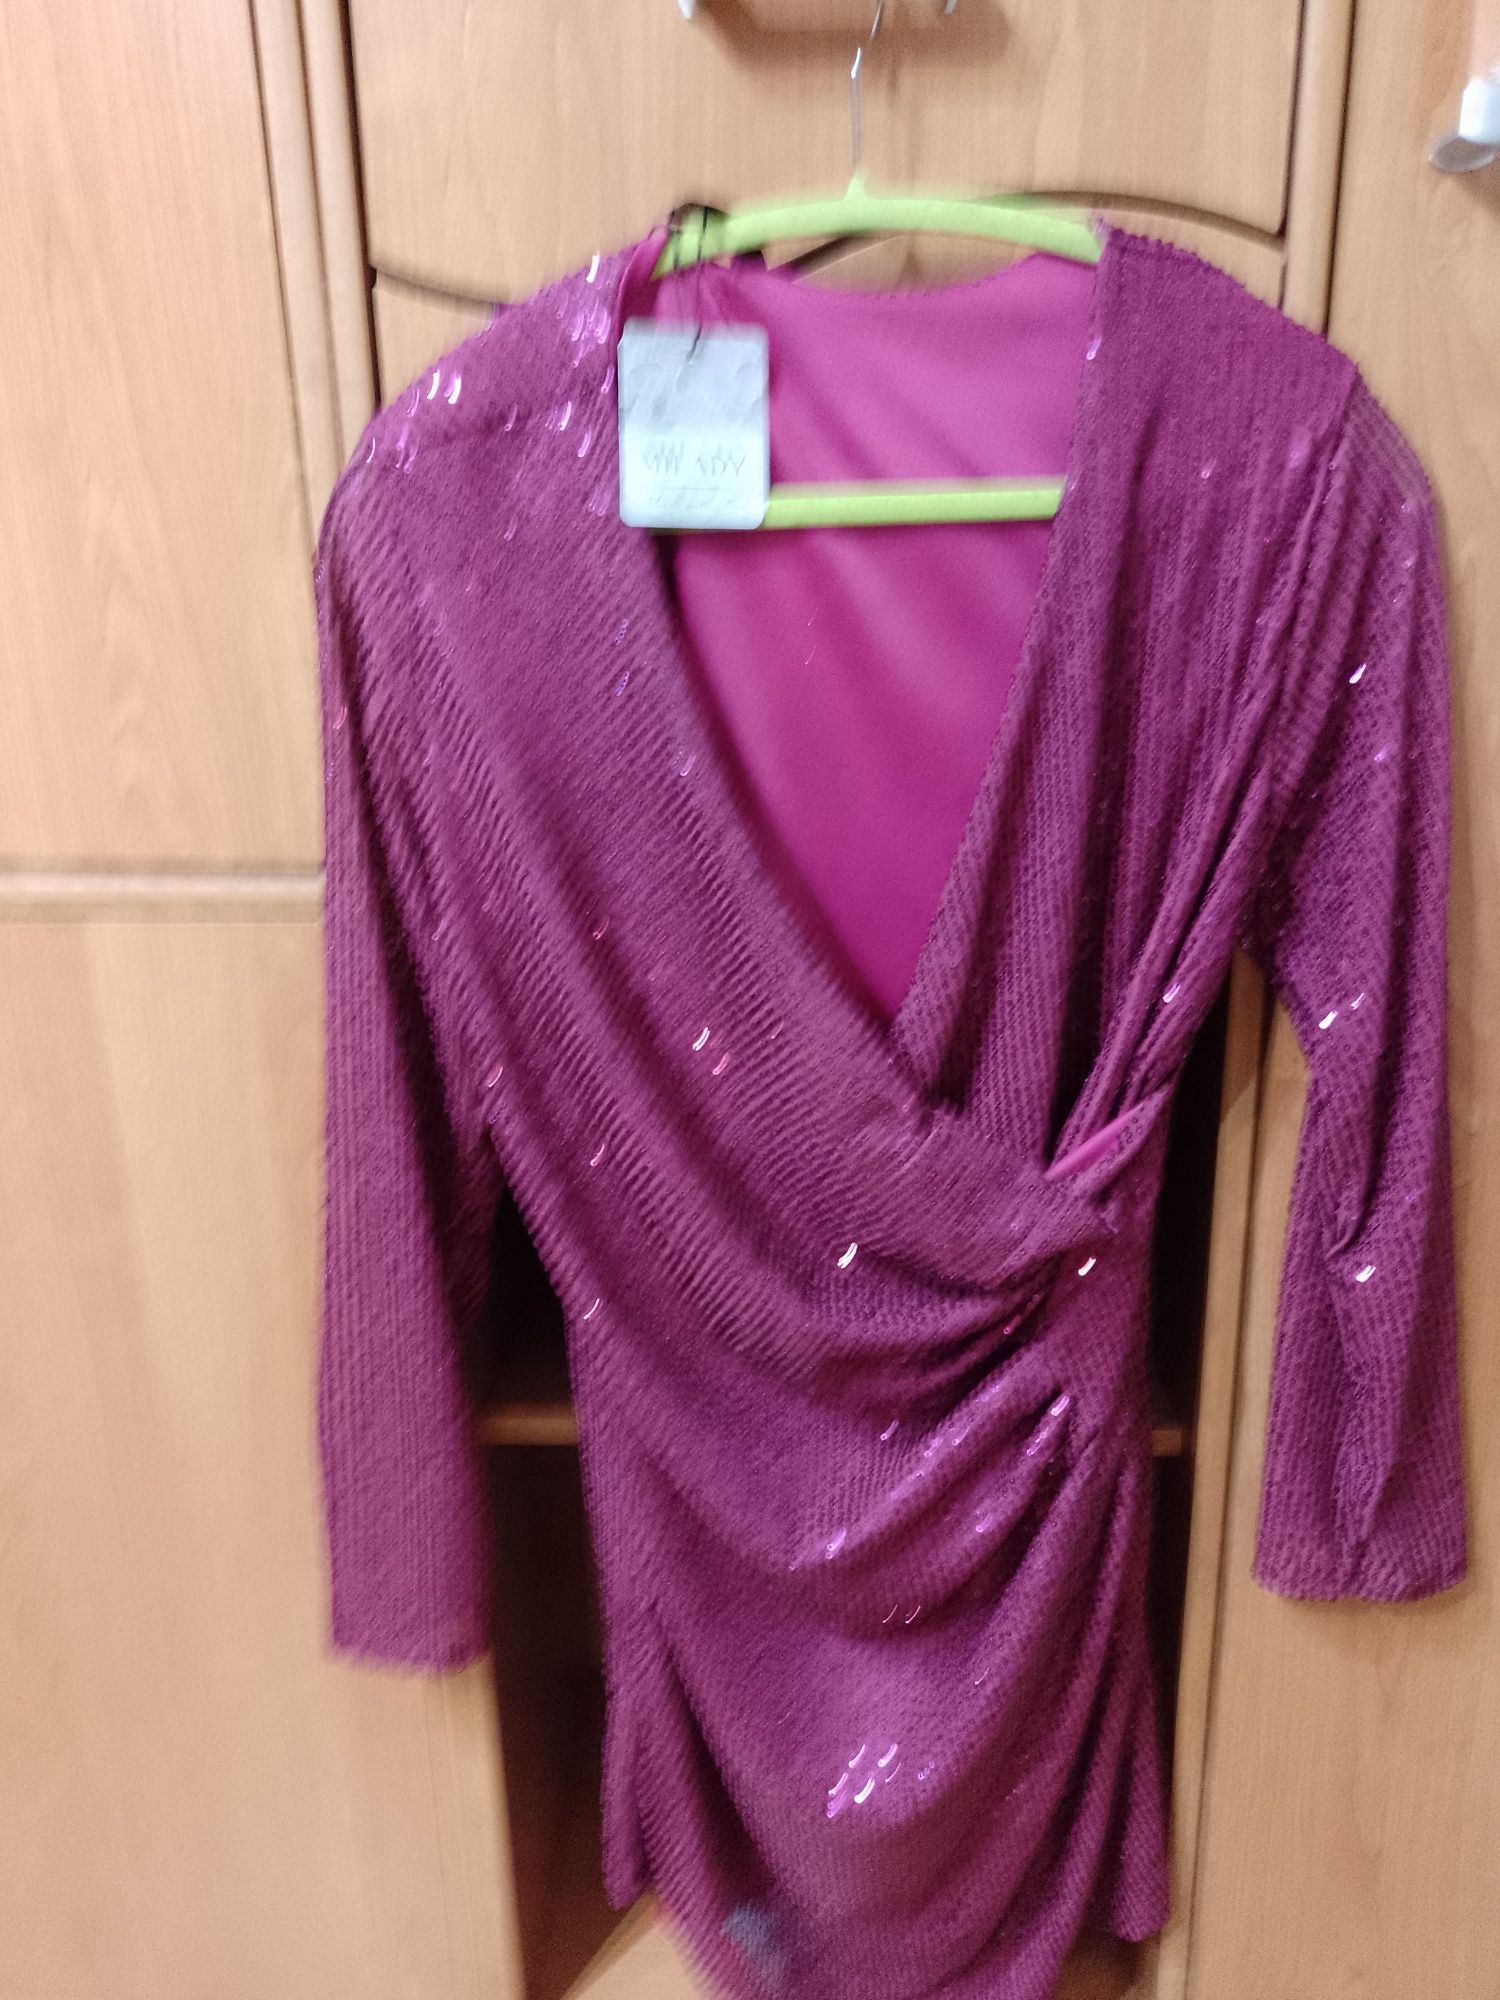 Sprzedam sukienkę fioletową nową z metką rozmiar uniwersalny